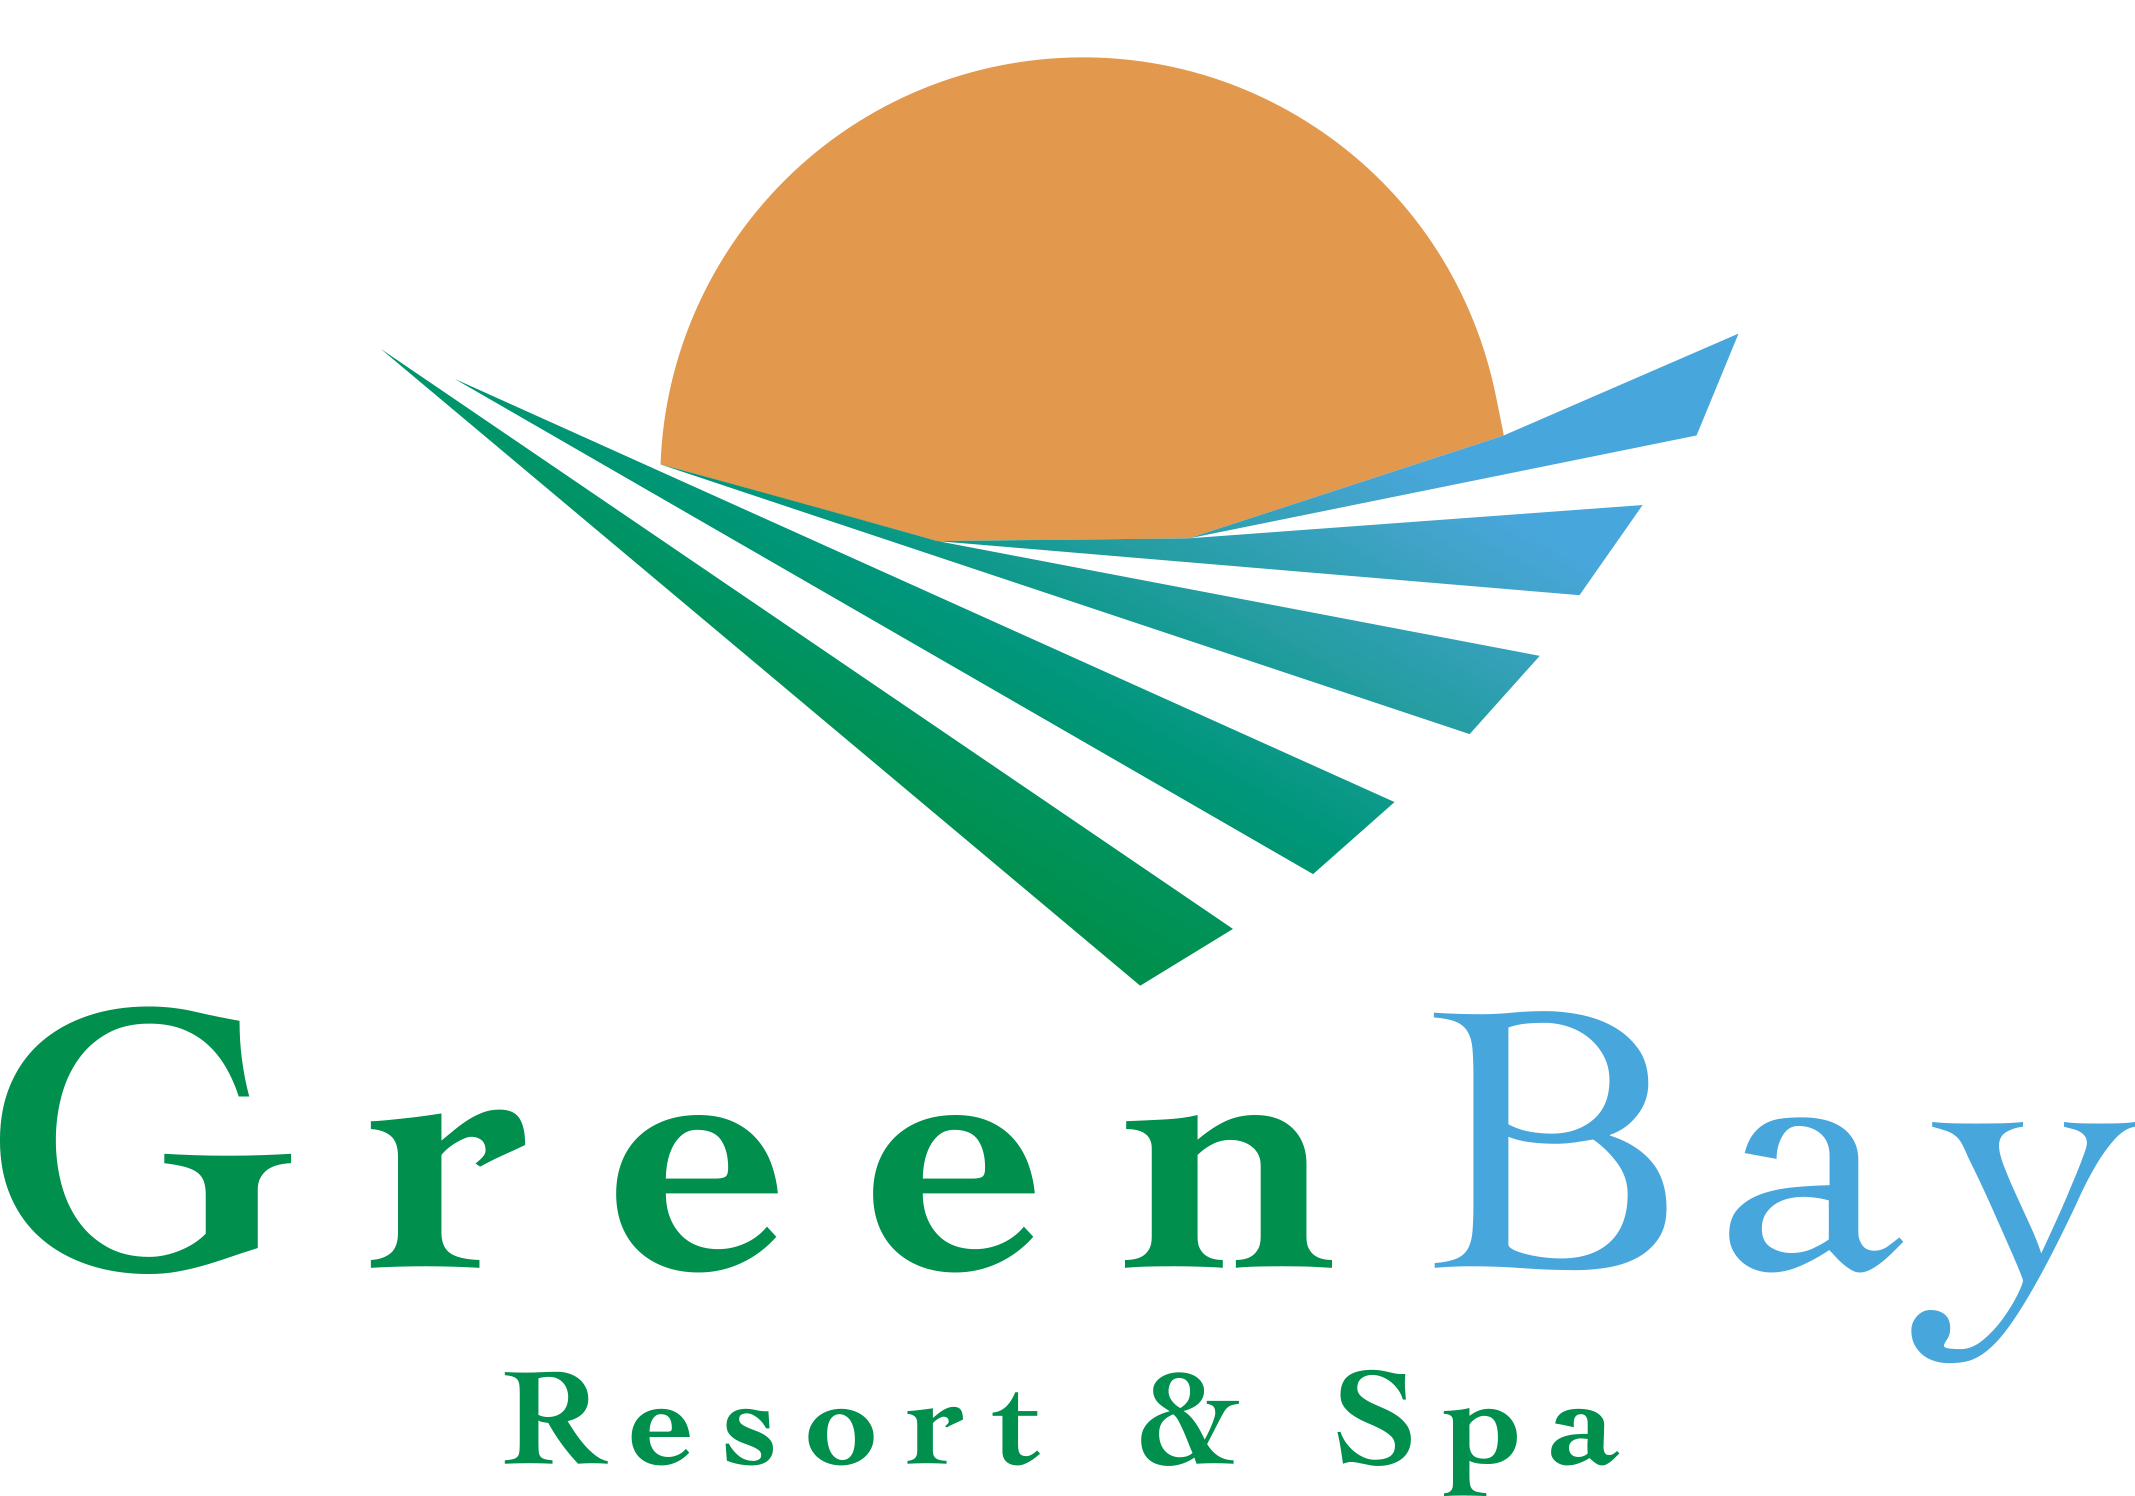 Greenbay Resort & Spa